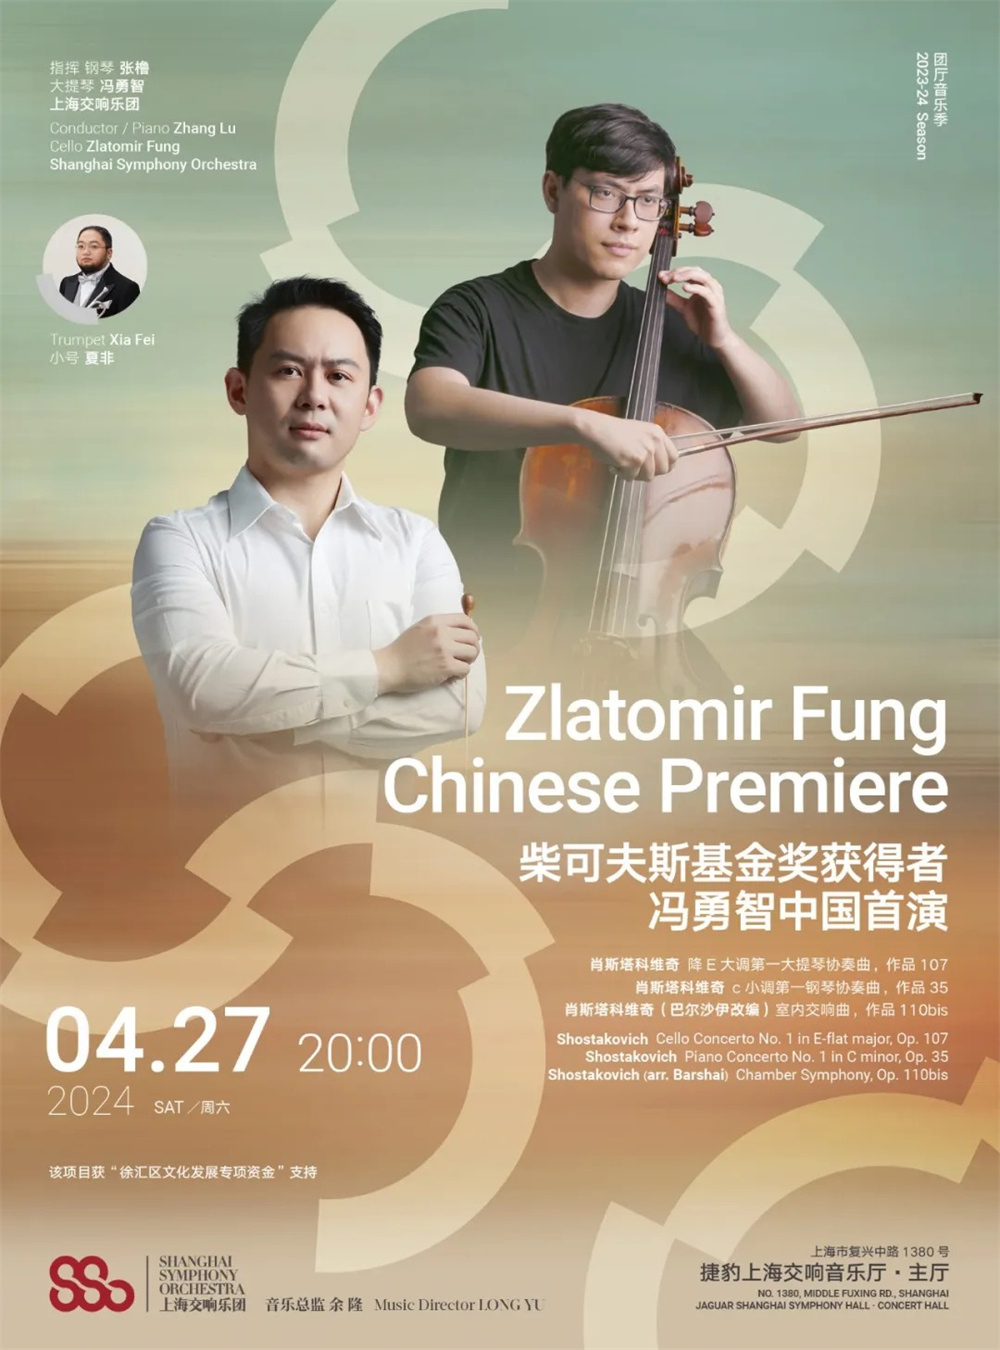 音乐会将通过上海交响乐团的视频号直播。